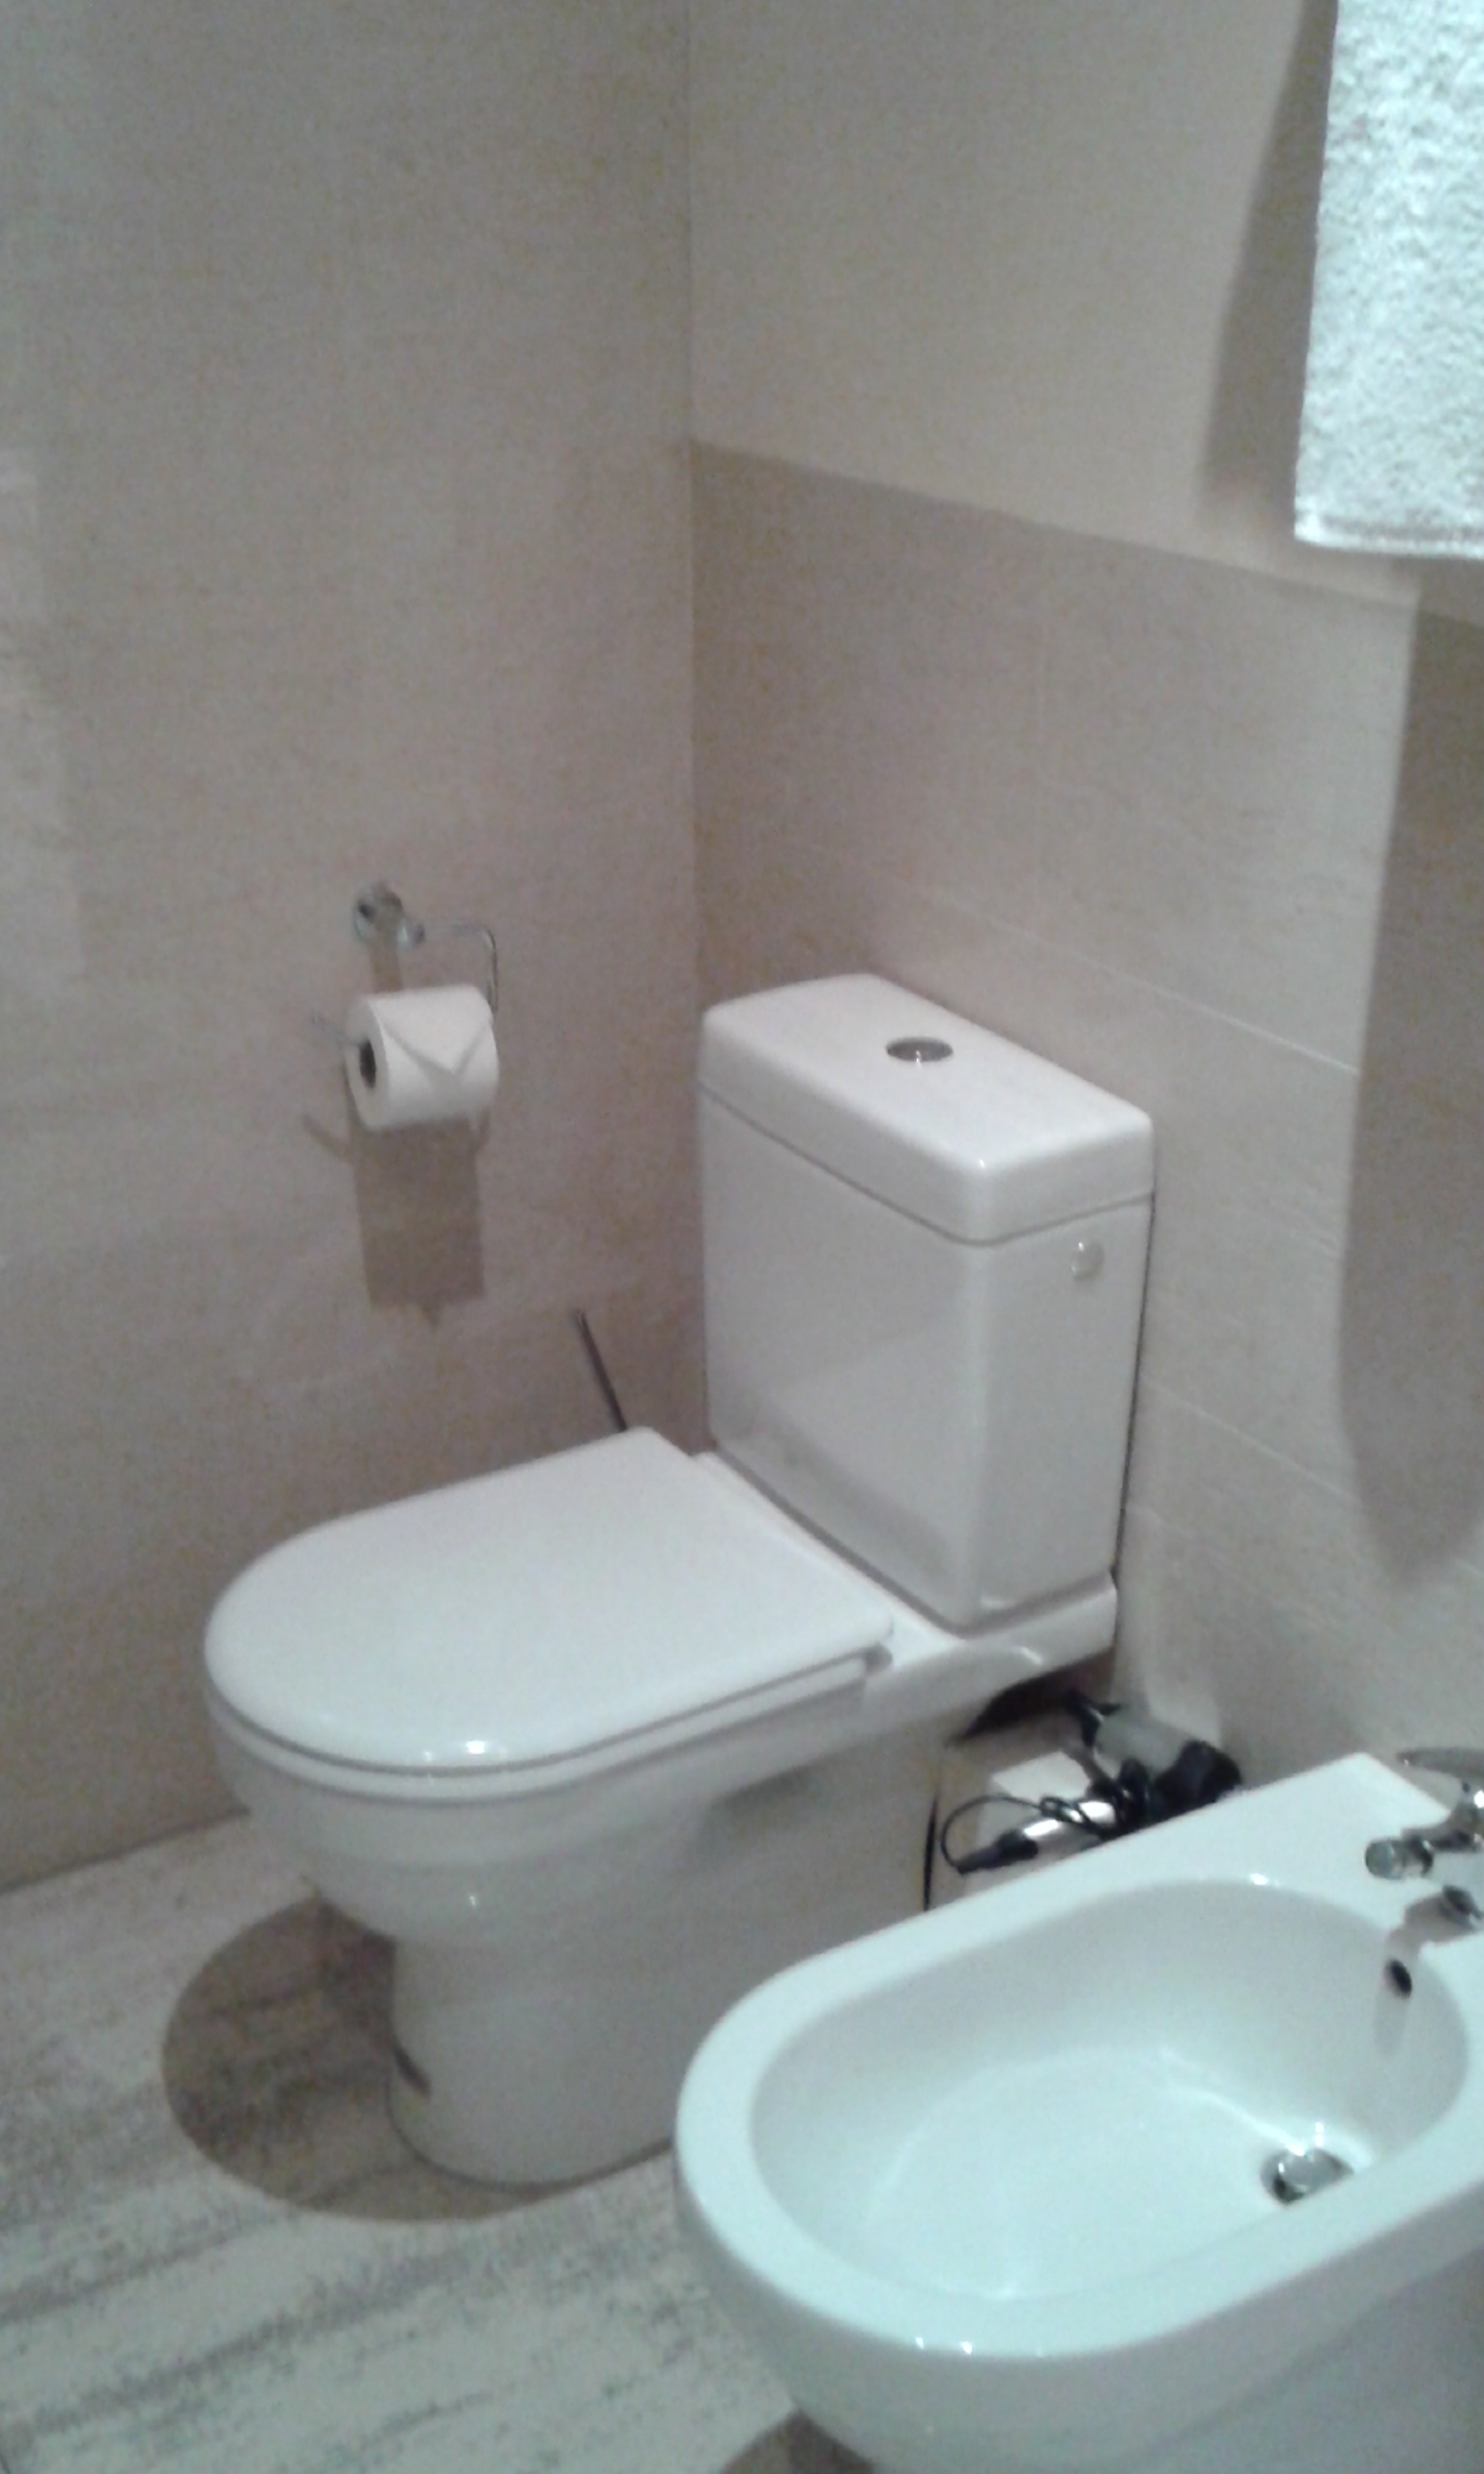 łazienka - pokój hotelowy - muszla i bidet